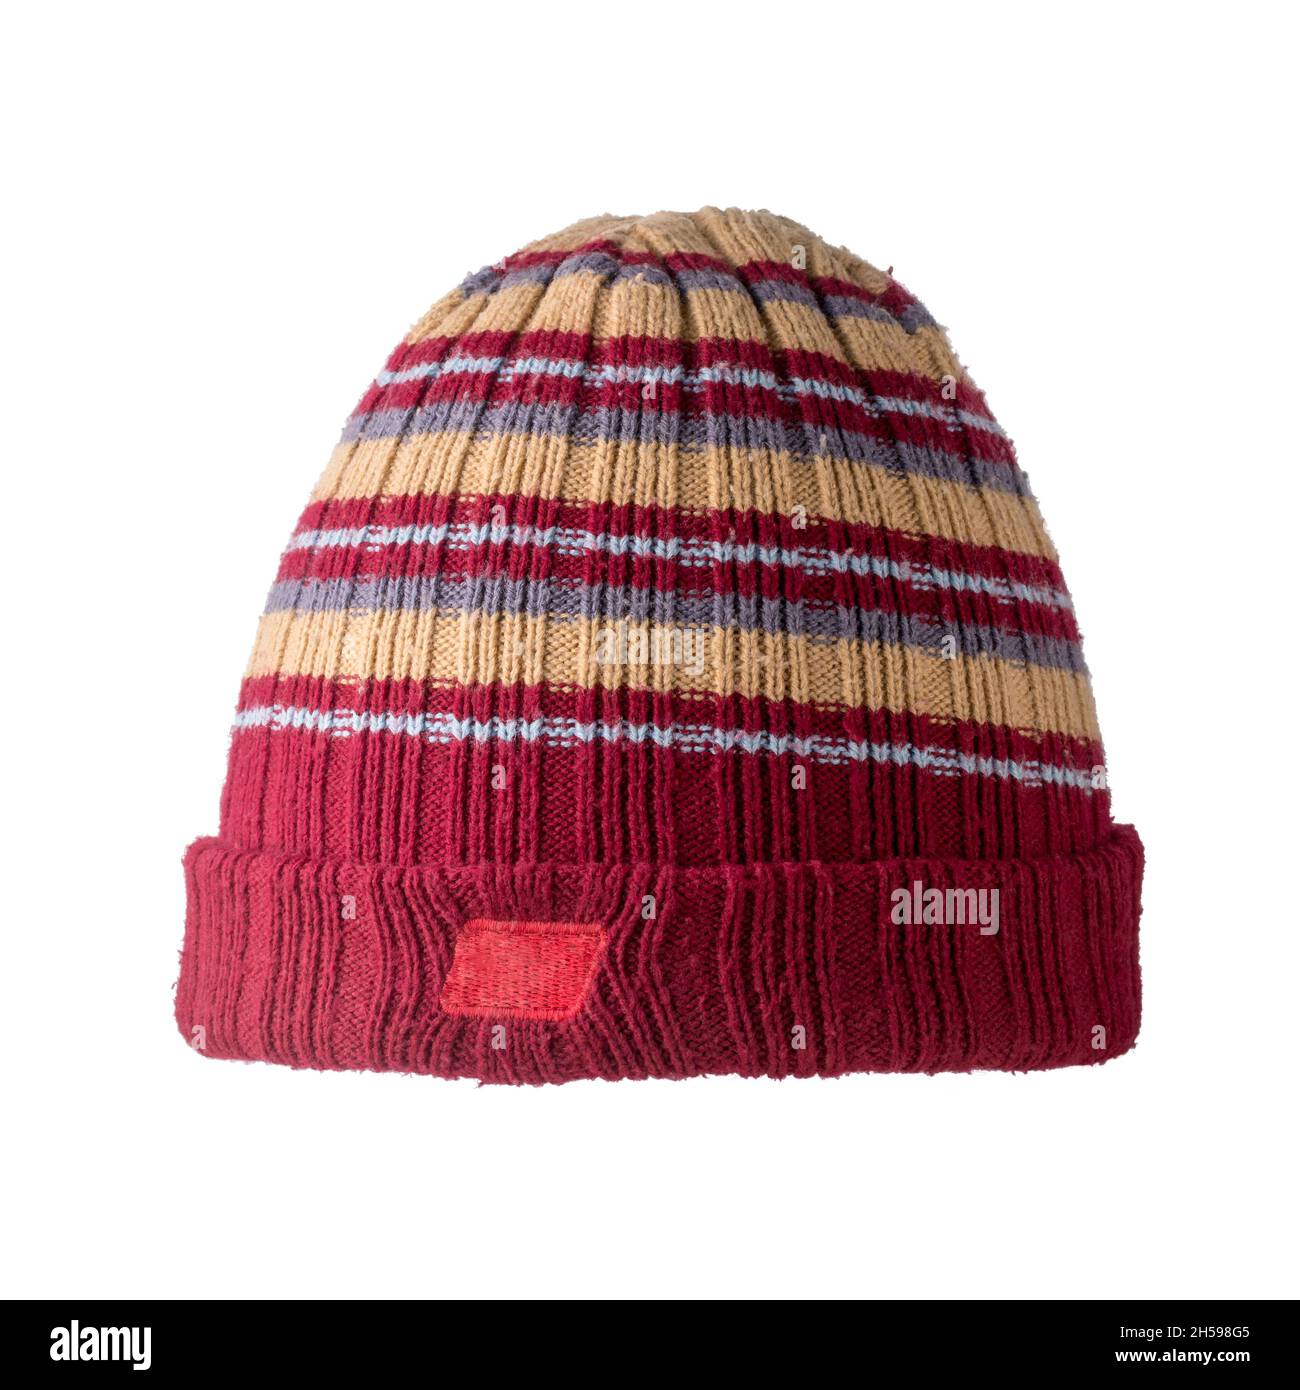 colorato cappellino invernale isolato su sfondo bianco, primo piano di maroon e berretto di lana di colore beige per il clima freddo Foto Stock